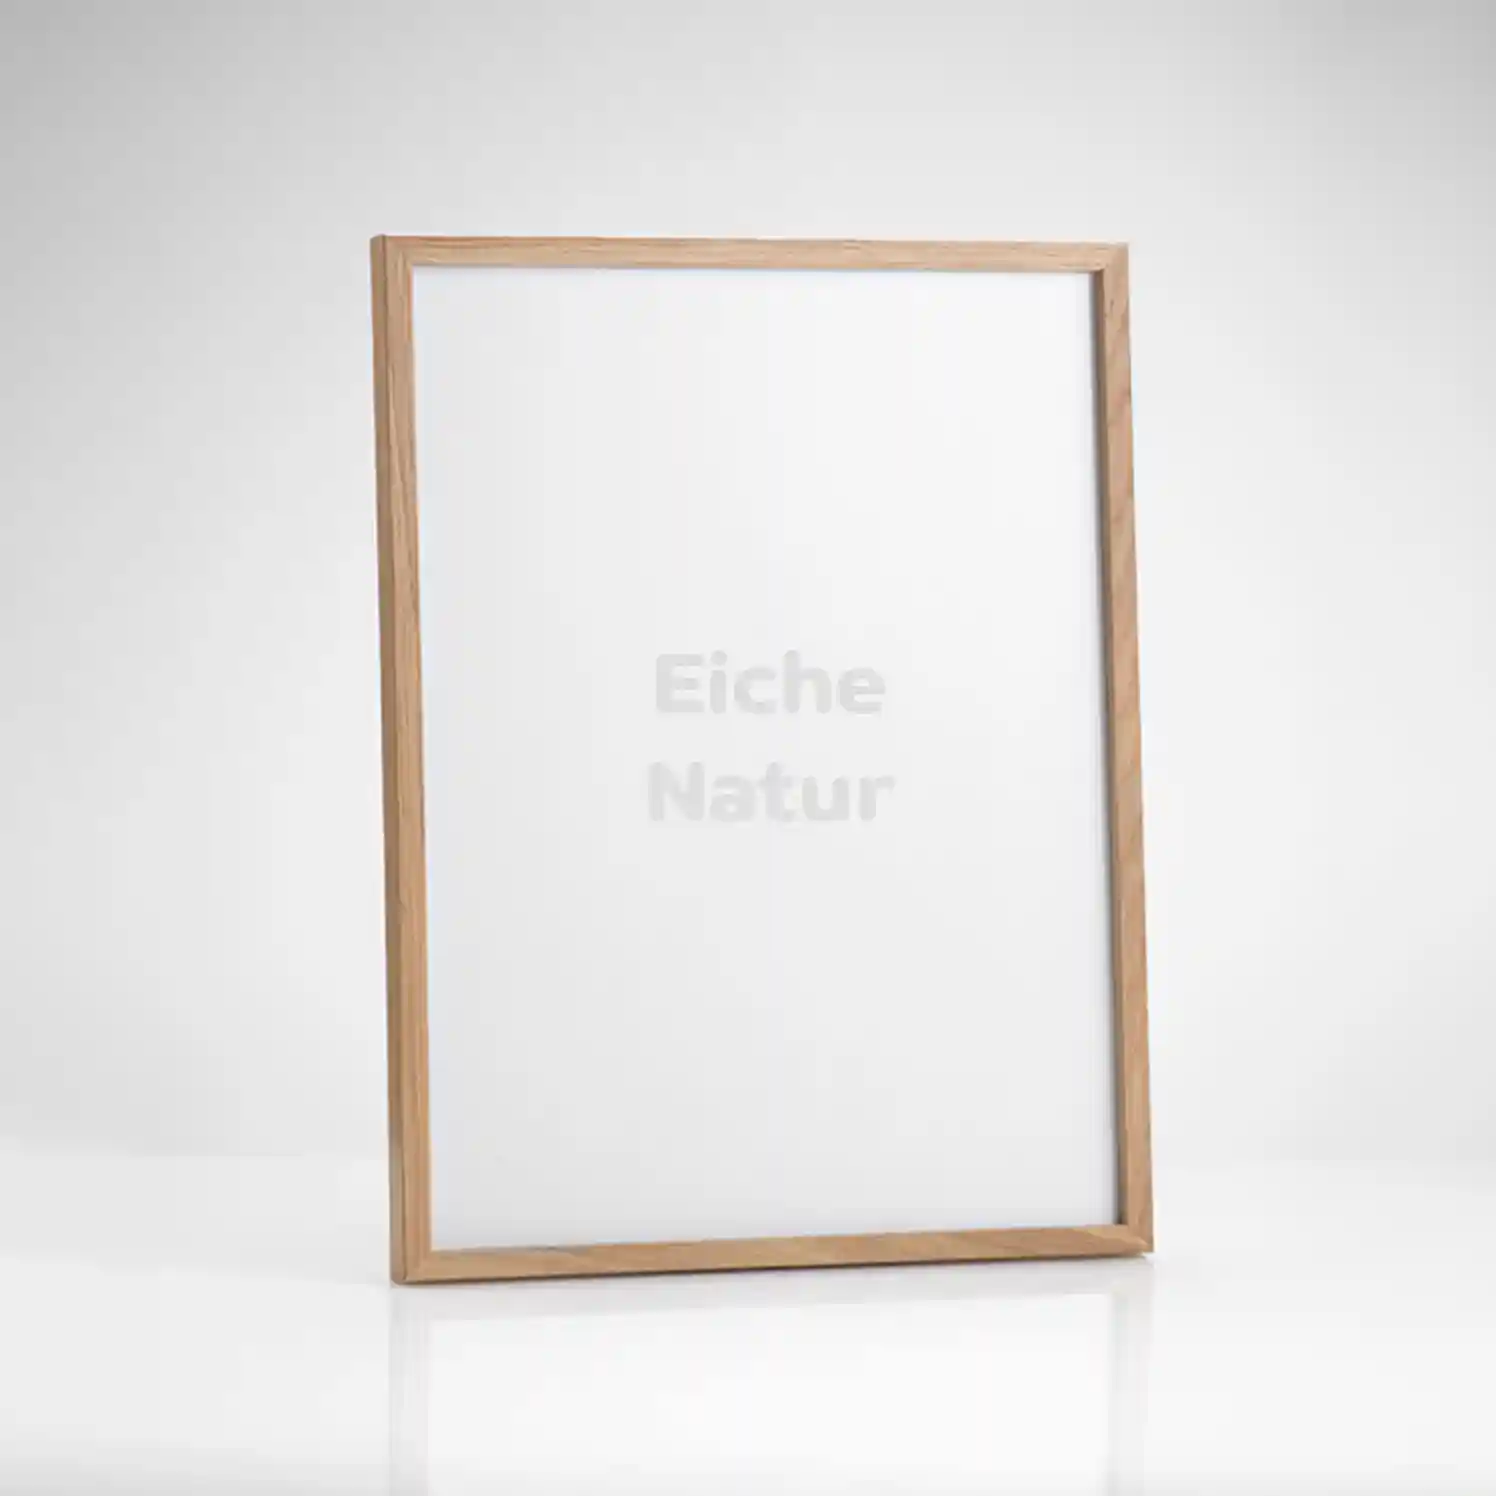 Bilderrahmen - Eiche Natur - 50 x 70 cm